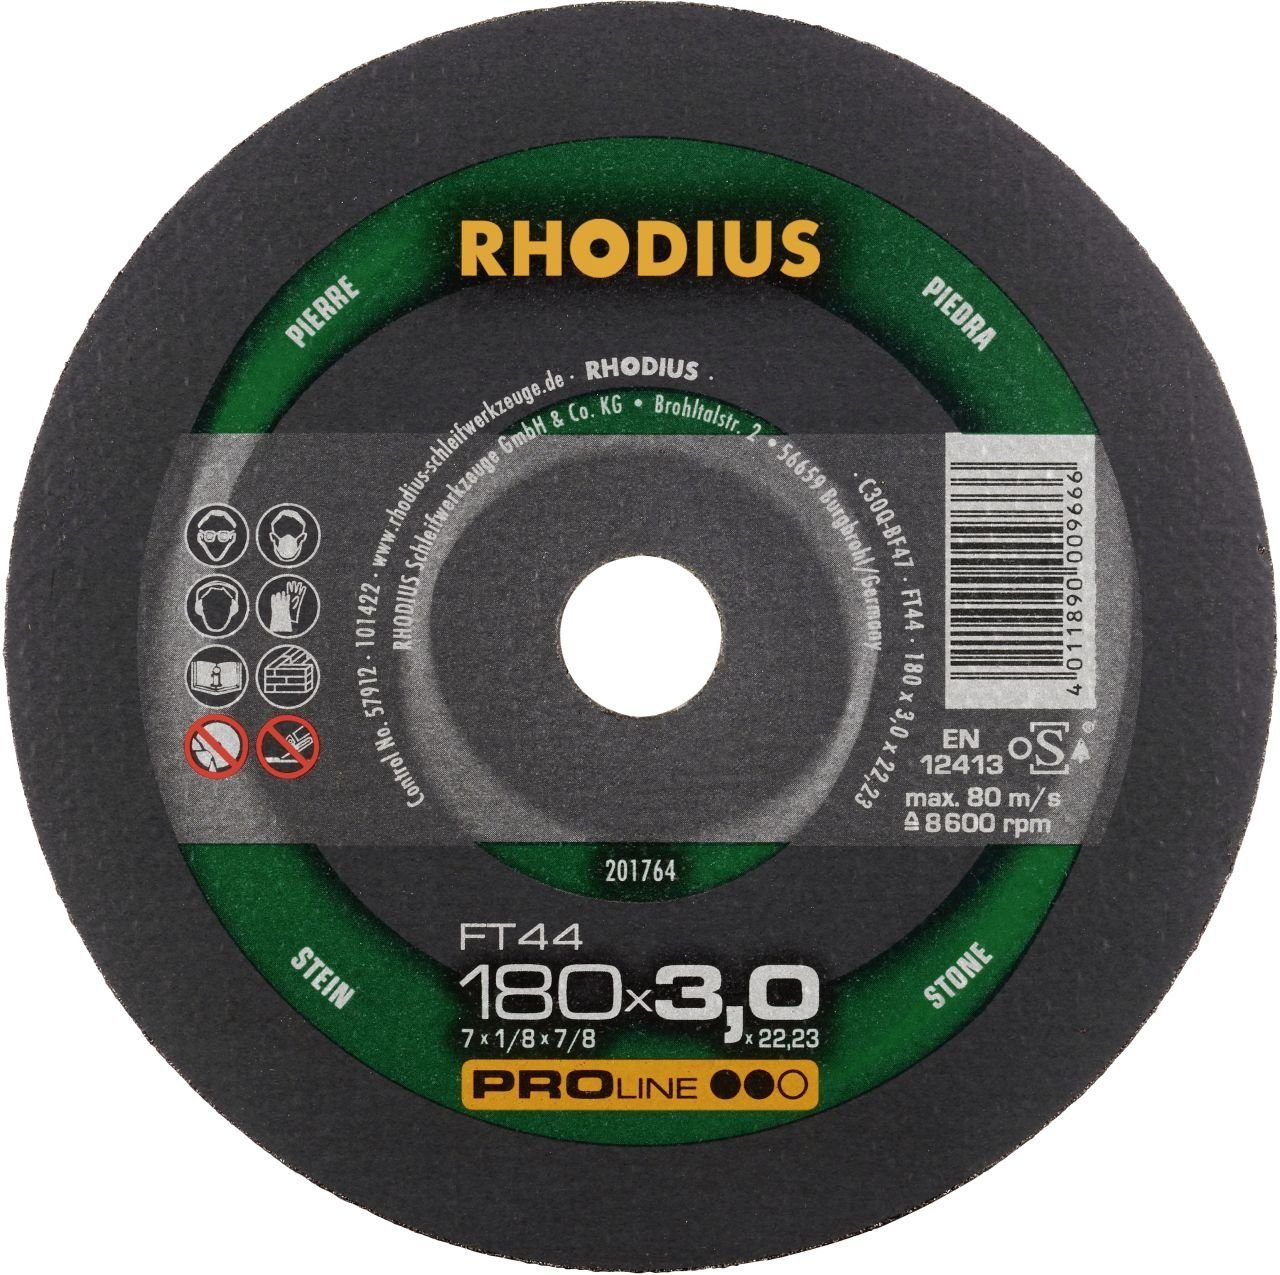 Rhodius Winkelschleifer Rhodius FT44 Freihandtrennscheibe Ø 180 mm Bohrung | Winkelschleifer